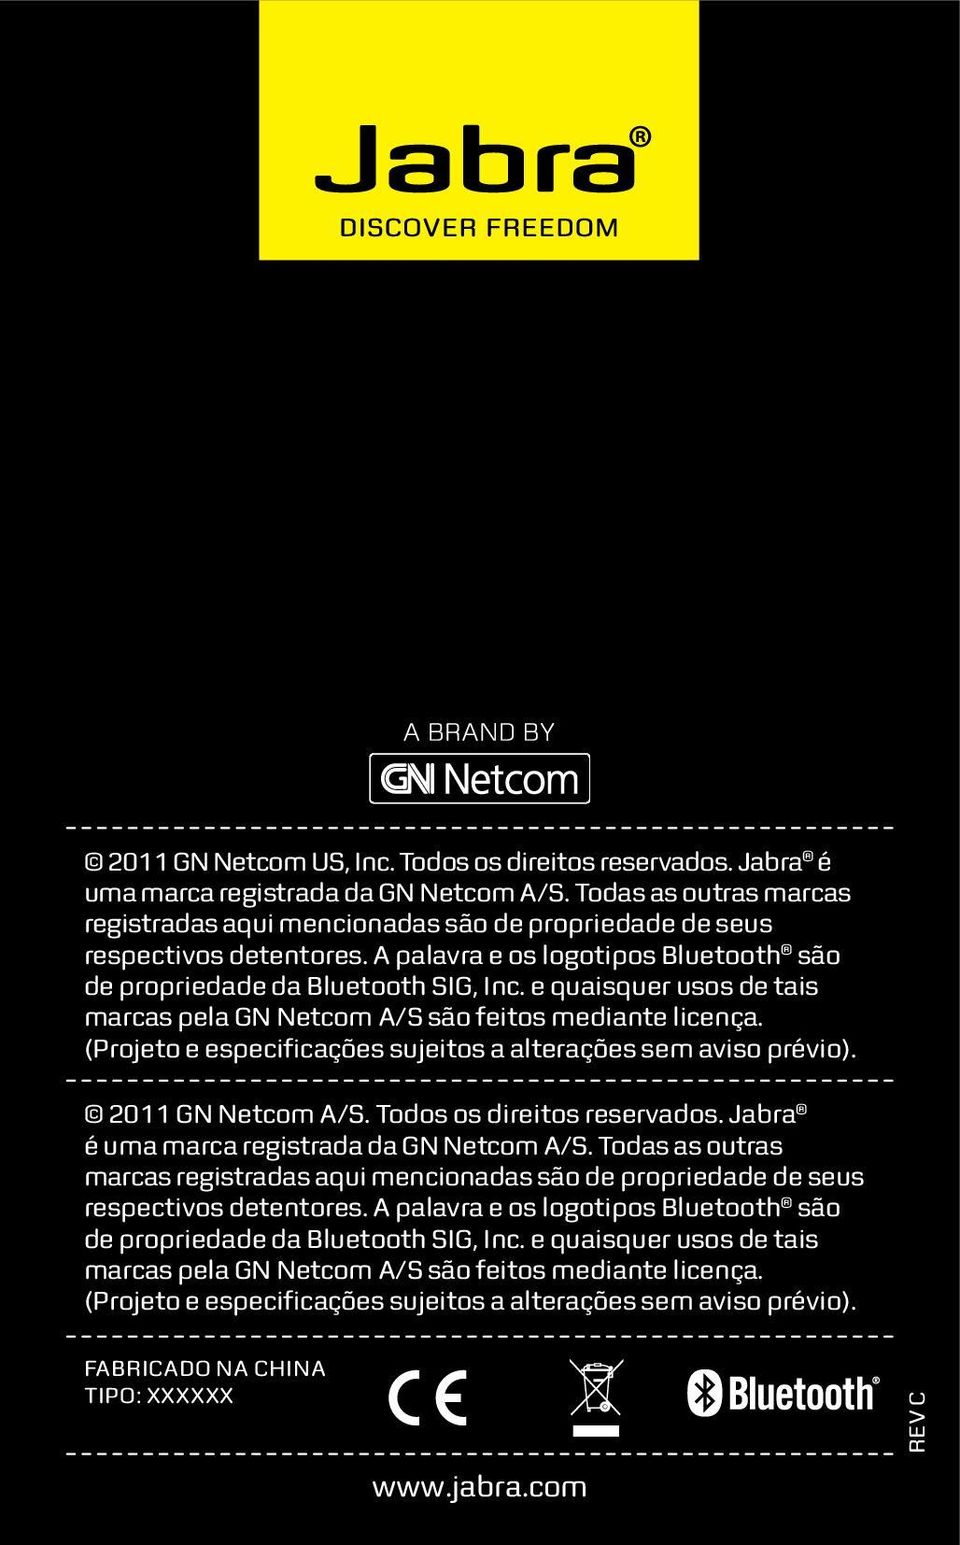 e quaisquer usos de tais marcas pela GN Netcom A/S são feitos mediante licença. (Projeto e especificações sujeitos a alterações sem aviso prévio). 2011 GN Netcom A/S. Todos os direitos reservados.